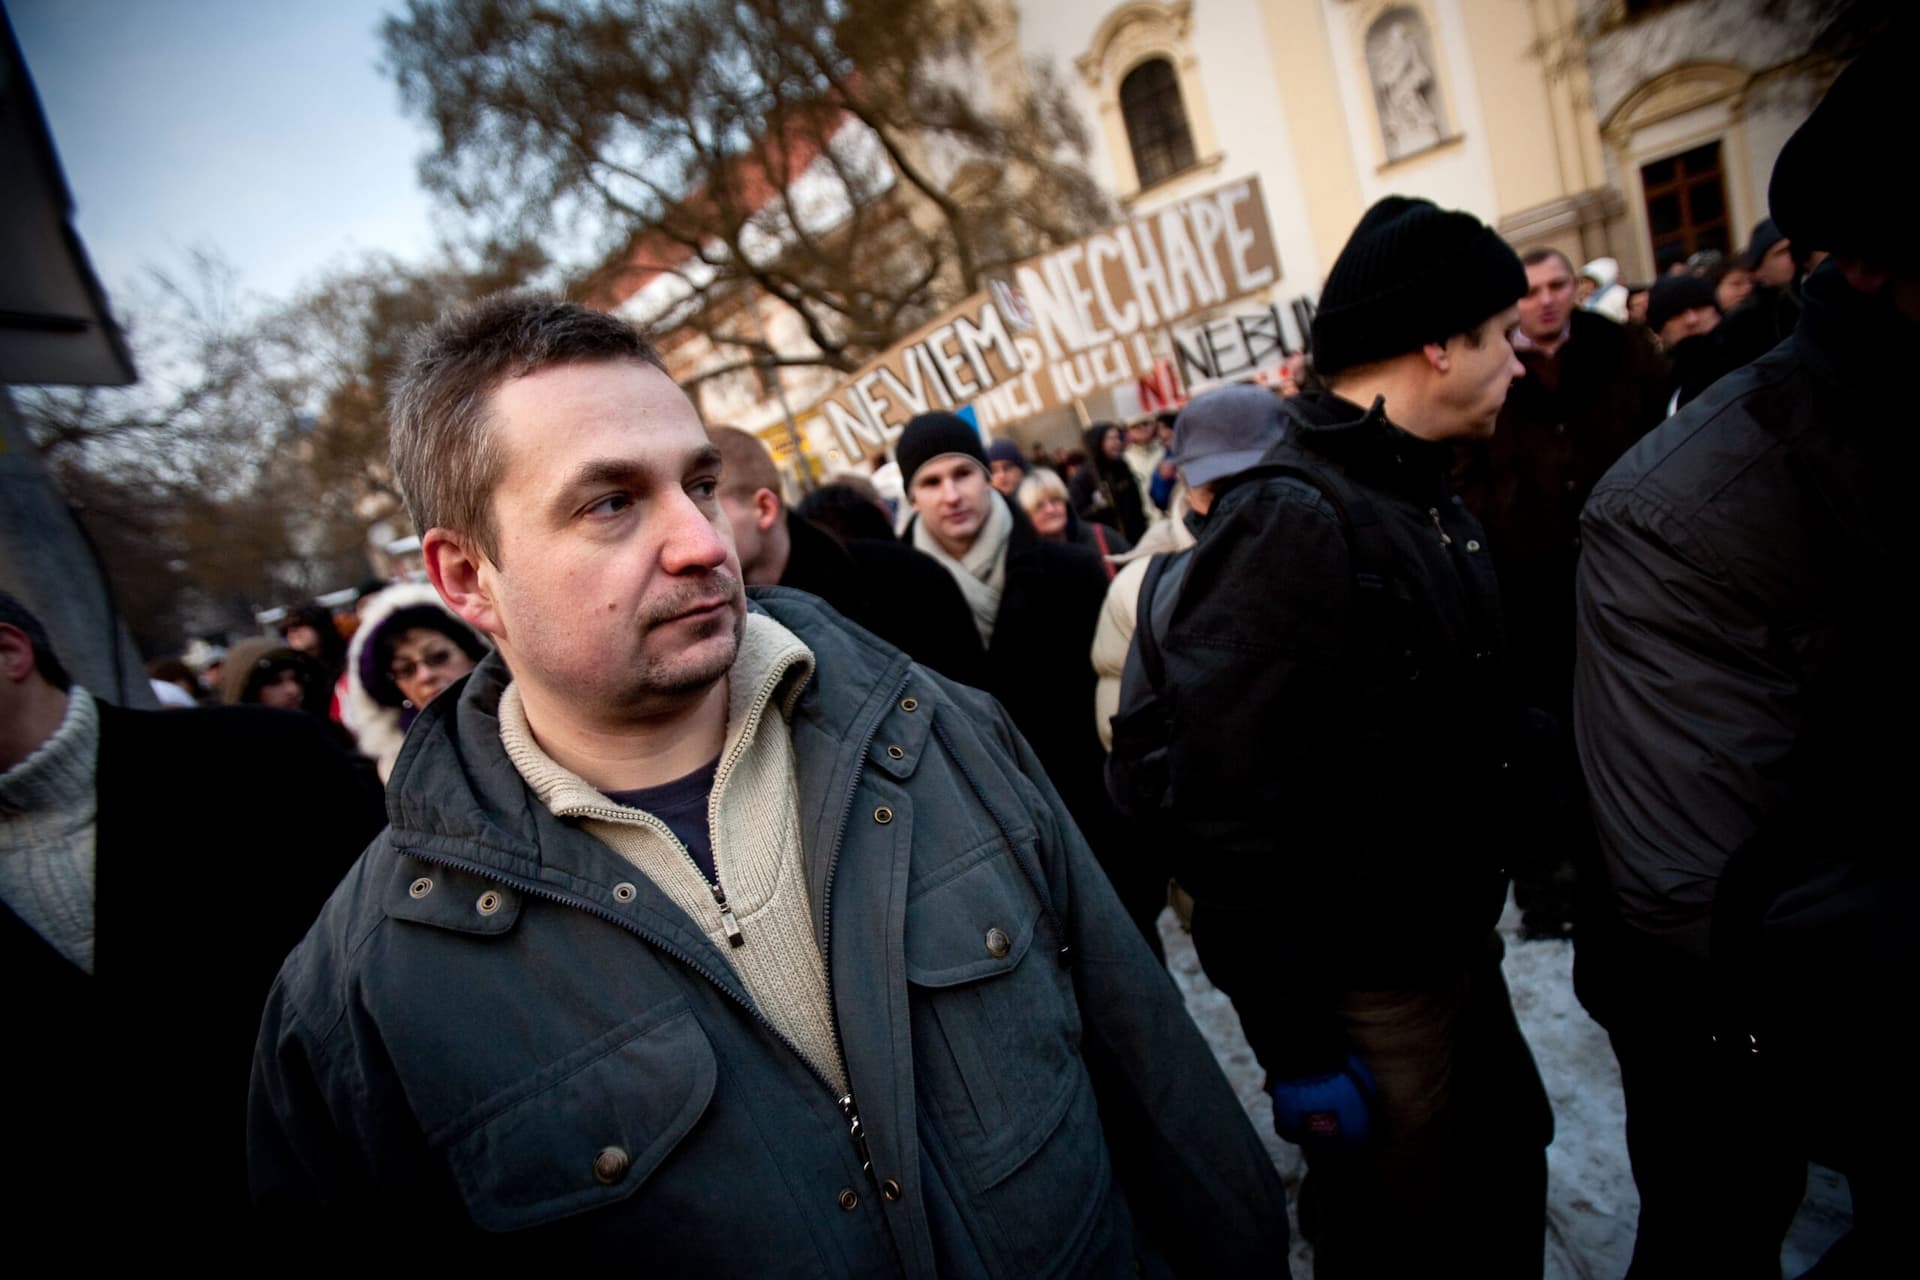 A kerületi bíróság megsértette a gyülekezési jogot, Ondrej Dostál 1 eurót kap cserébe